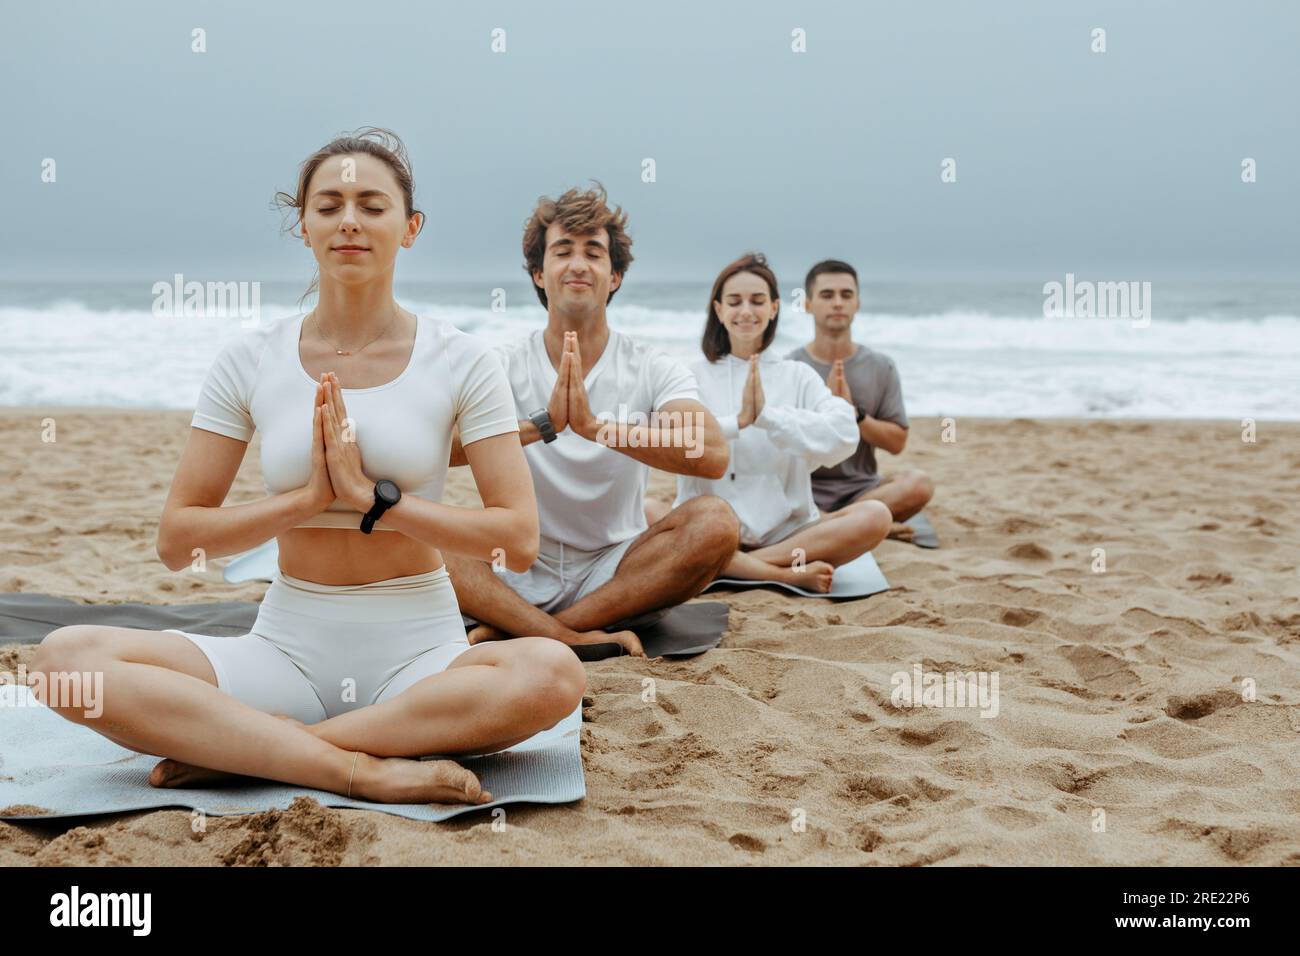 Der Lotus am Strand. Junge Leute meditieren während des Yoga-Kurses im Freien, sitzen auf Matten am Strand Stockfoto